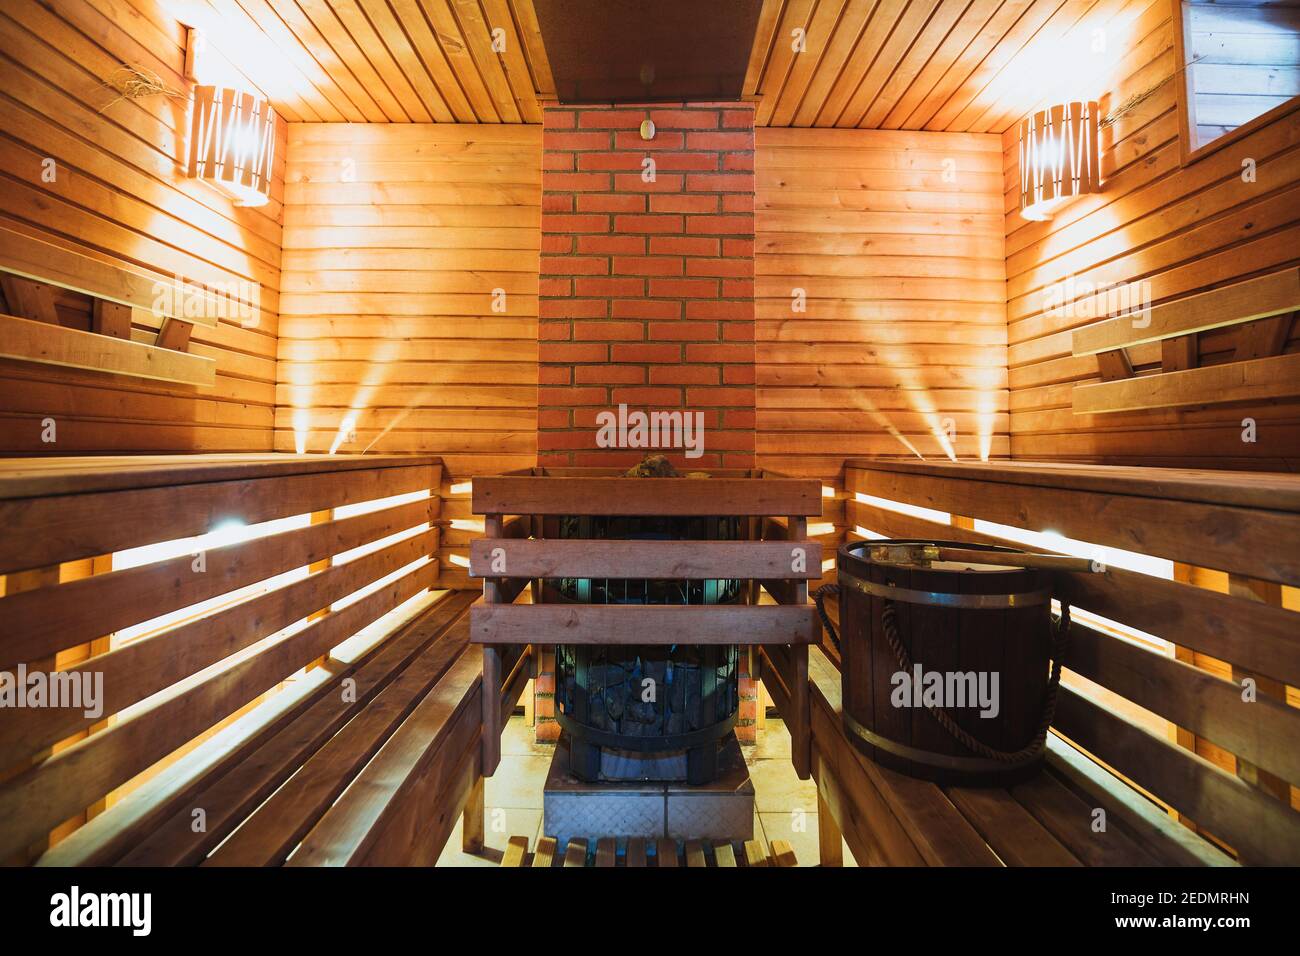 À l'intérieur du hammam dans la salle de bains - bancs en bois et arôme  boisé à haute température Photo Stock - Alamy